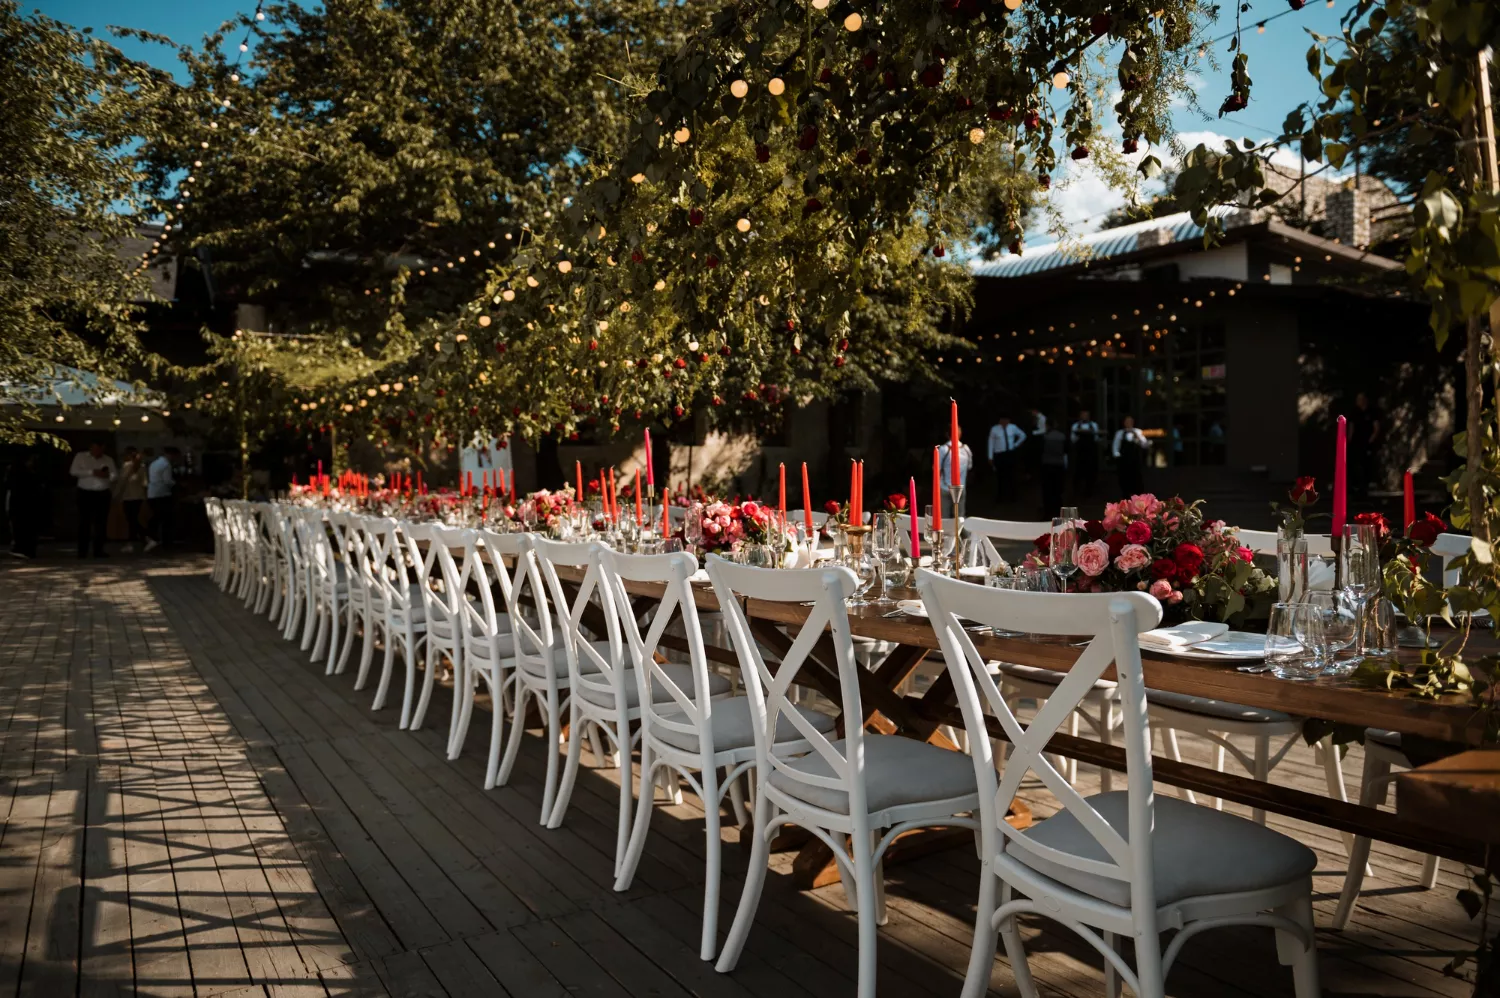 戶外婚禮賓客桌椅可視邀請賓客人數來估算。